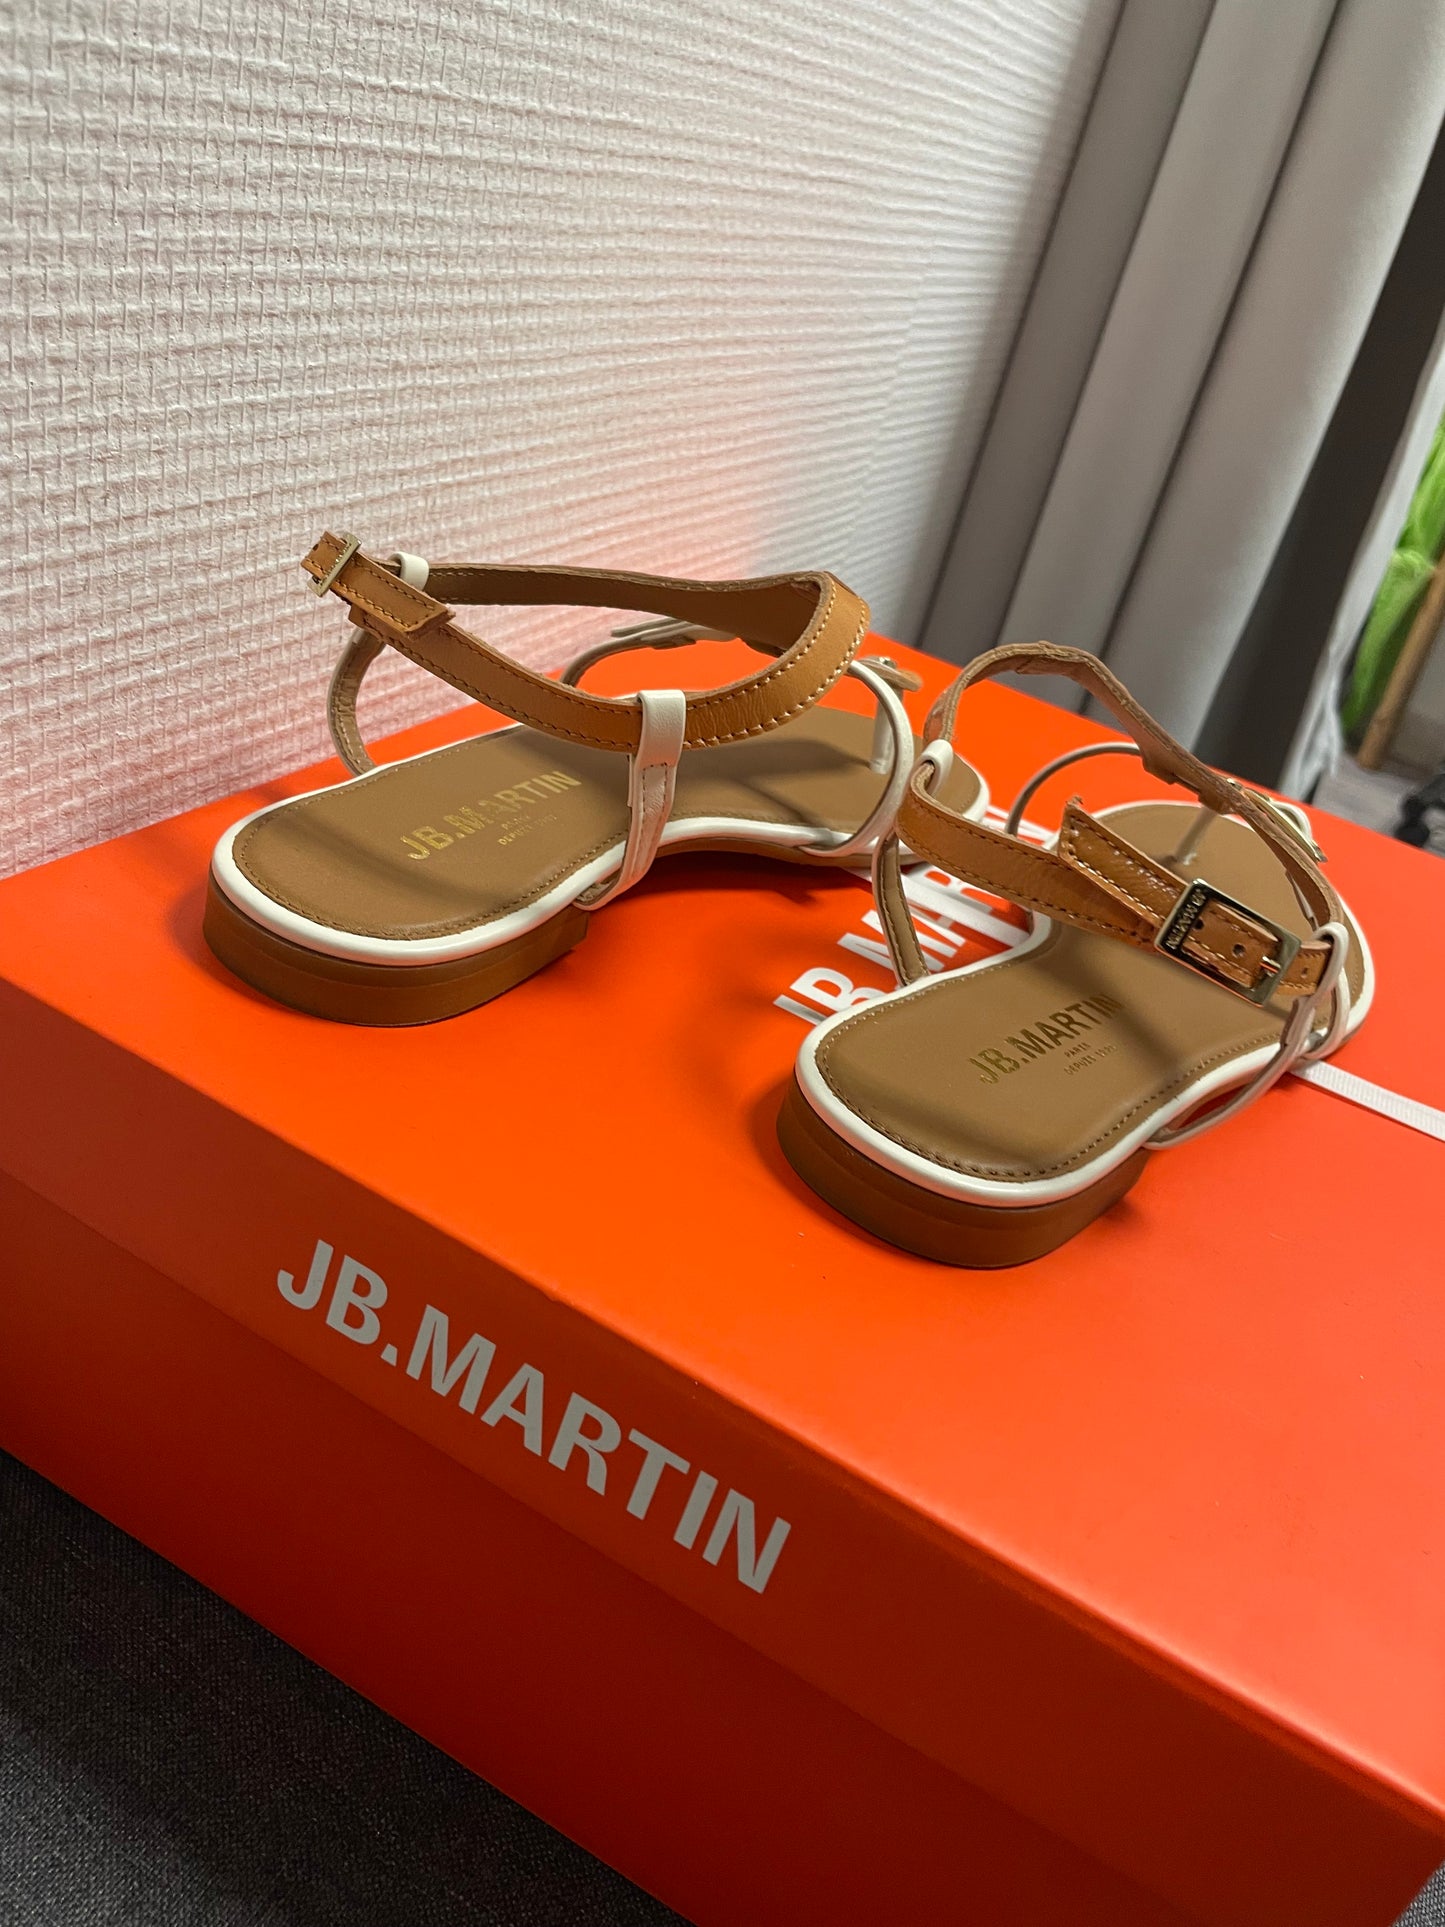 AISSA JB.MARTIN sandals